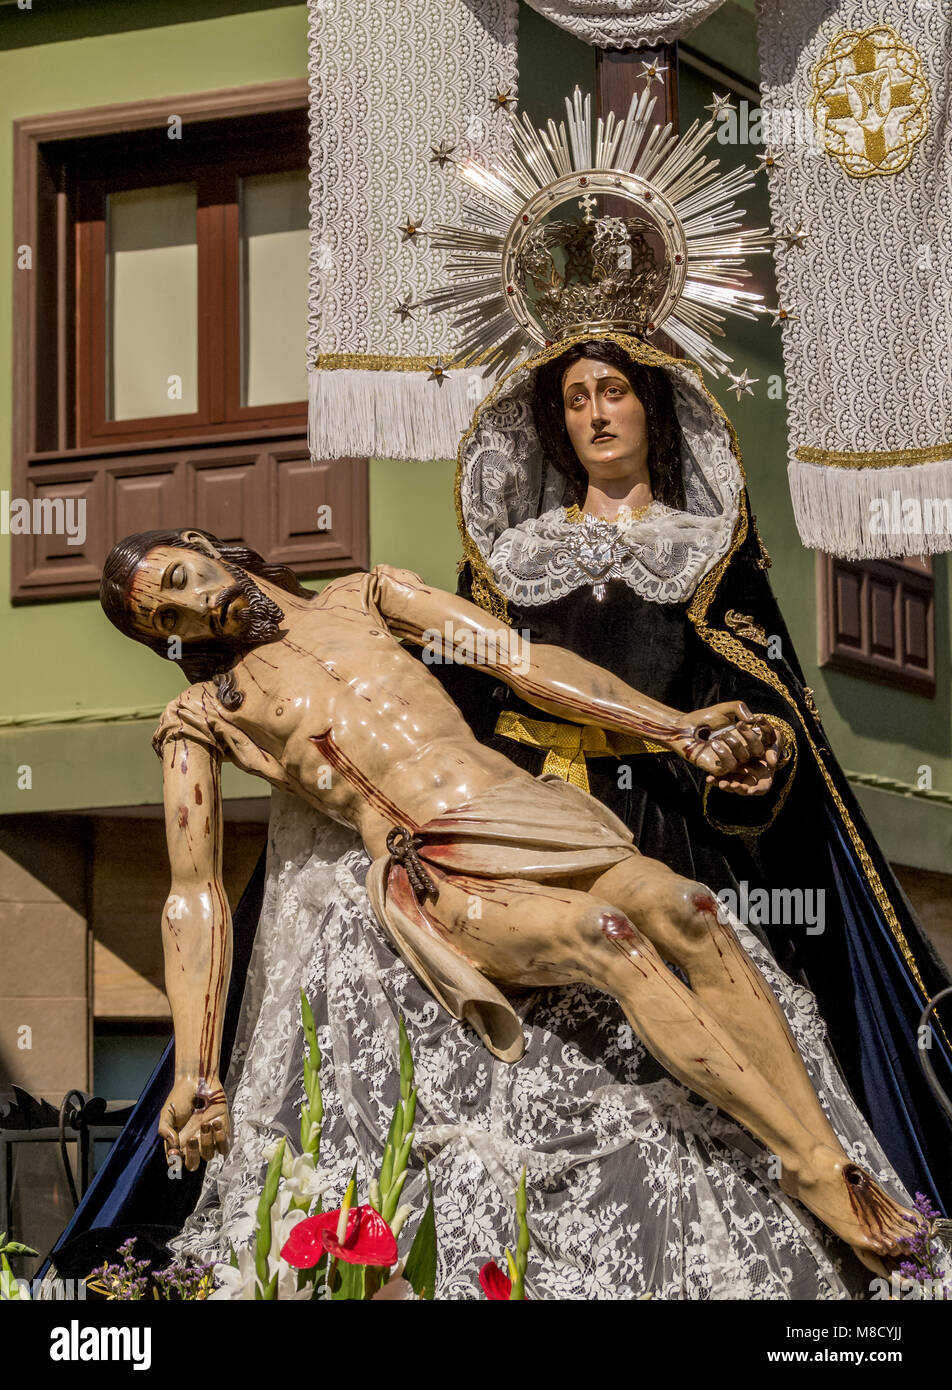 Schöne traditionelle Ostern Karwoche Prozession in San Cristobal de La Laguna, Teneriffa, Kanarische Inseln, Spanien Stockfoto